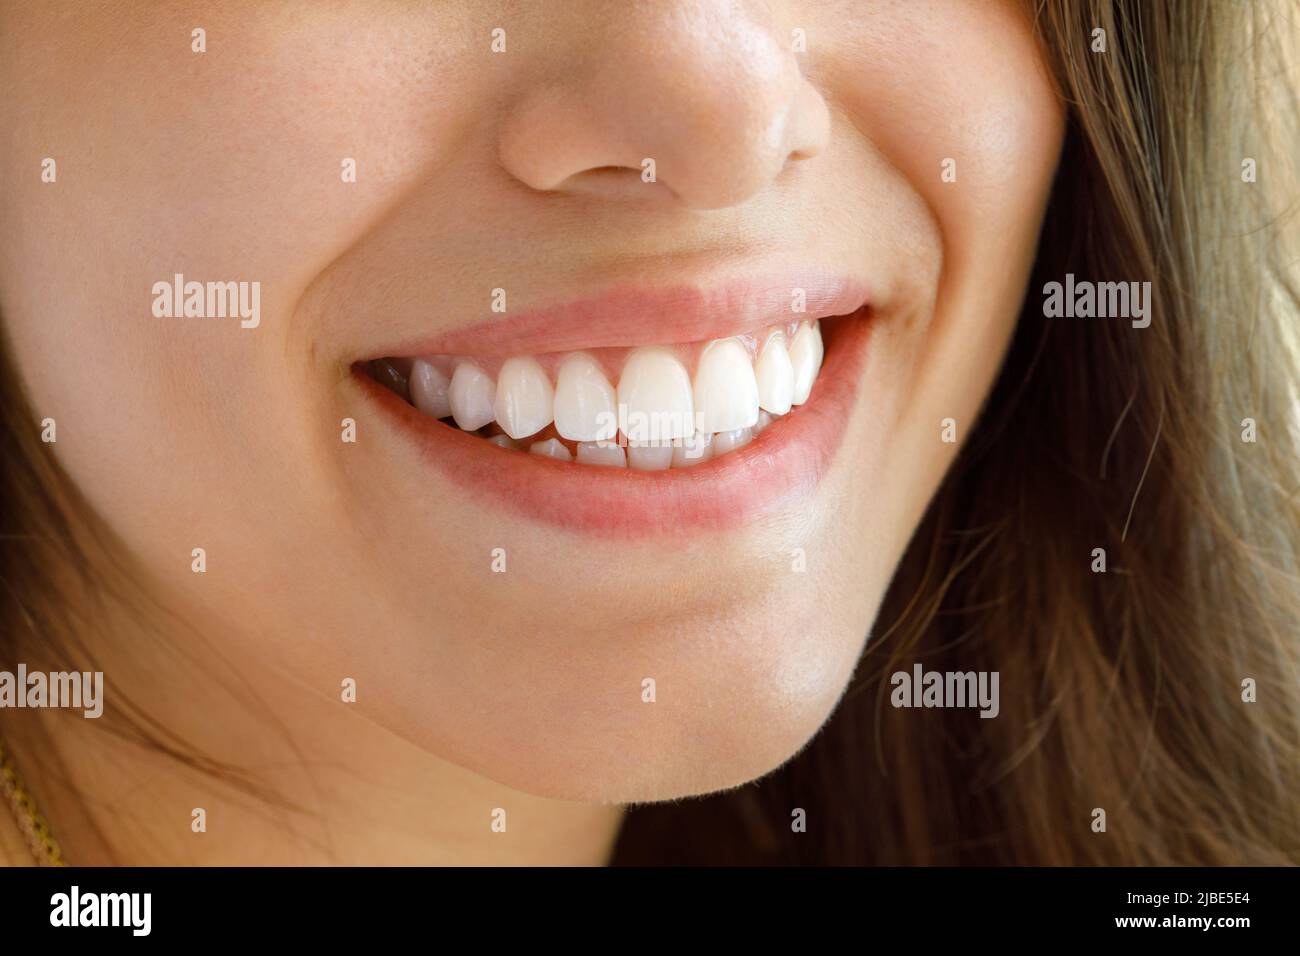 Bellissimo sorriso femminile. Denti bianchi sani di una giovane donna. Foto Stock